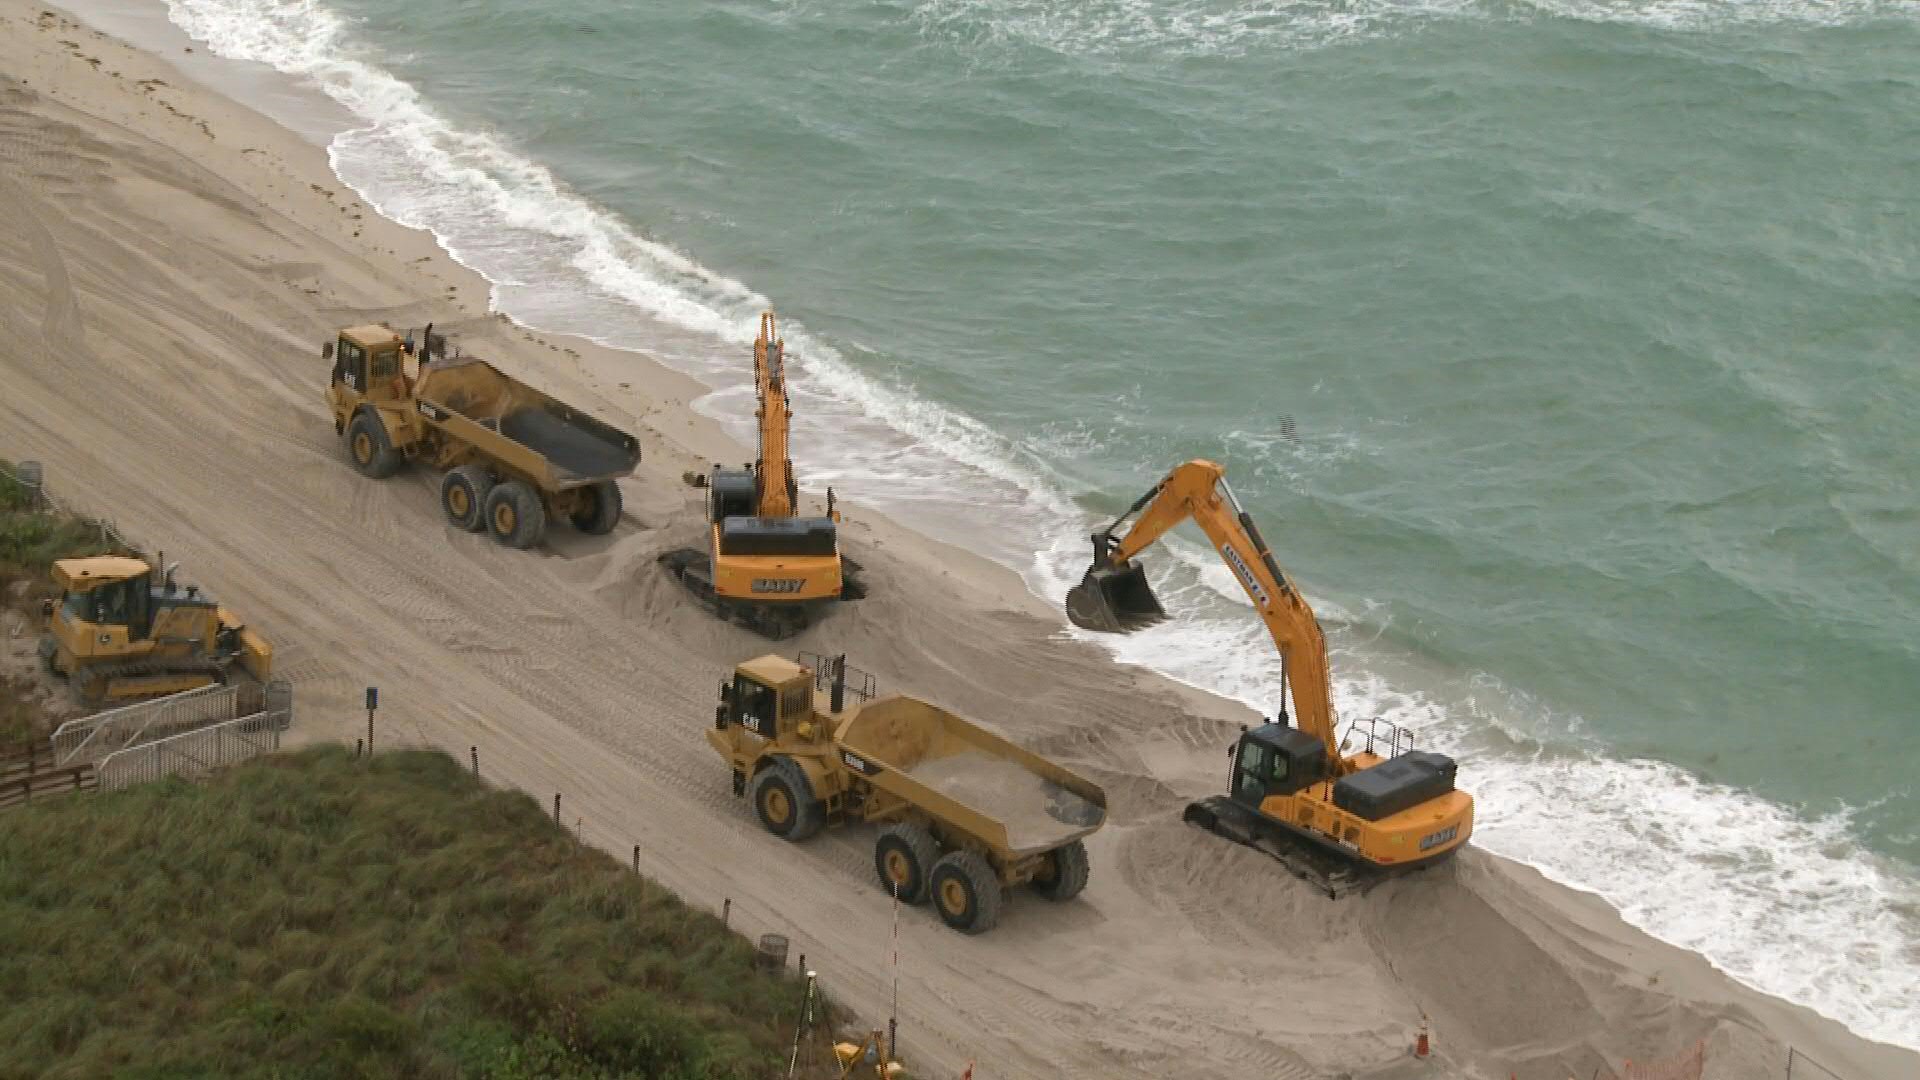 Decenas de camiones están vertiendo miles de toneladas de arena blanca con partículas de no más de 4,7 milímetros de diámetro en Miami Beach, como parte de la respuesta del gobierno de Estados Unidos a la erosión producida por el aumento del nivel del mar en uno de los destinos turísticos más populares de Florida